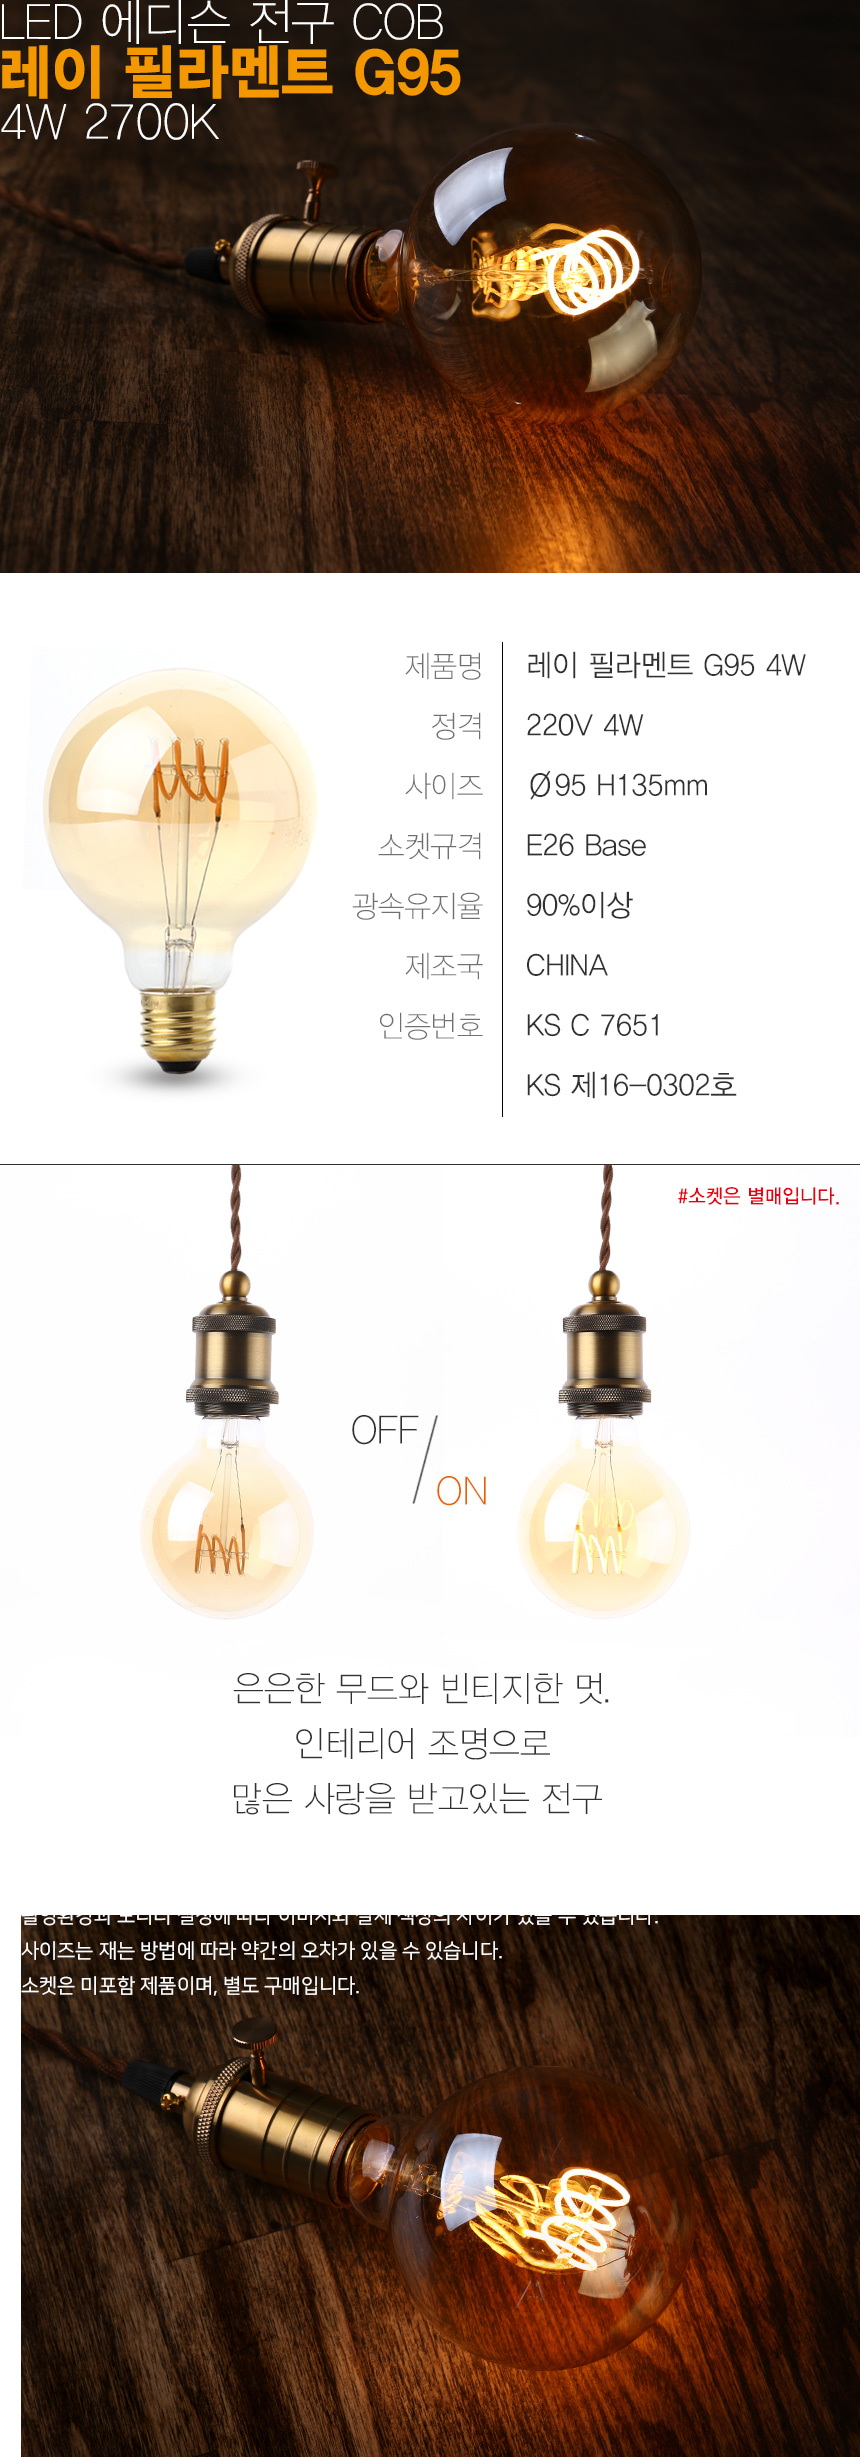 Pilot-Lampe; L-4205 SB Pilotlampe Minilampe 2W 250mA 8V 